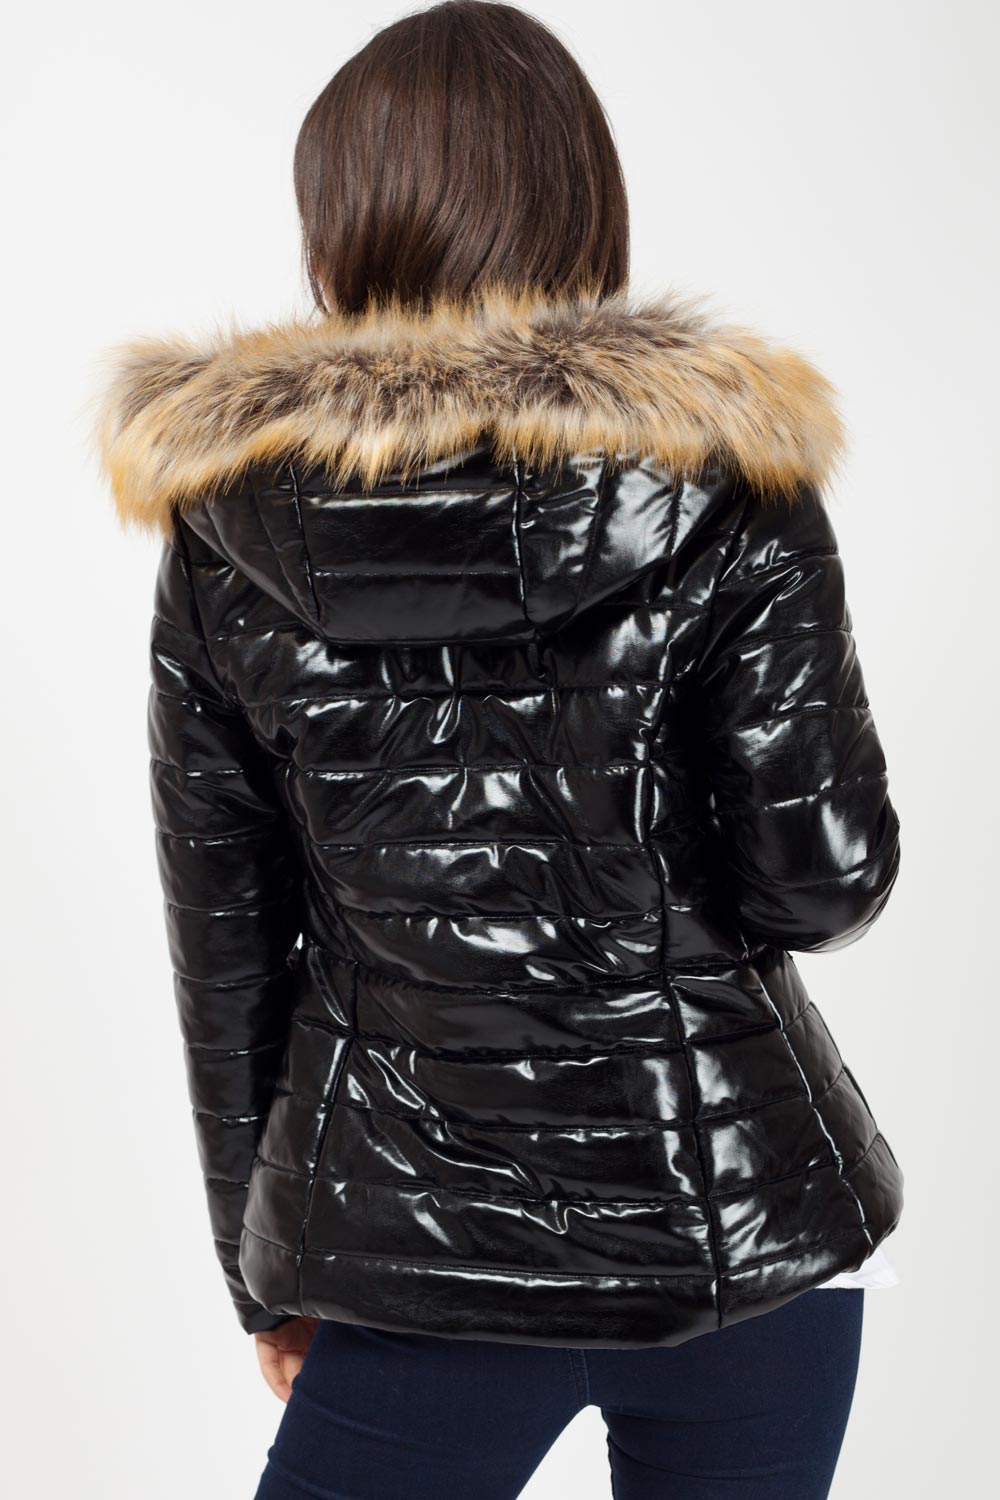 shiny jacket with fur hood